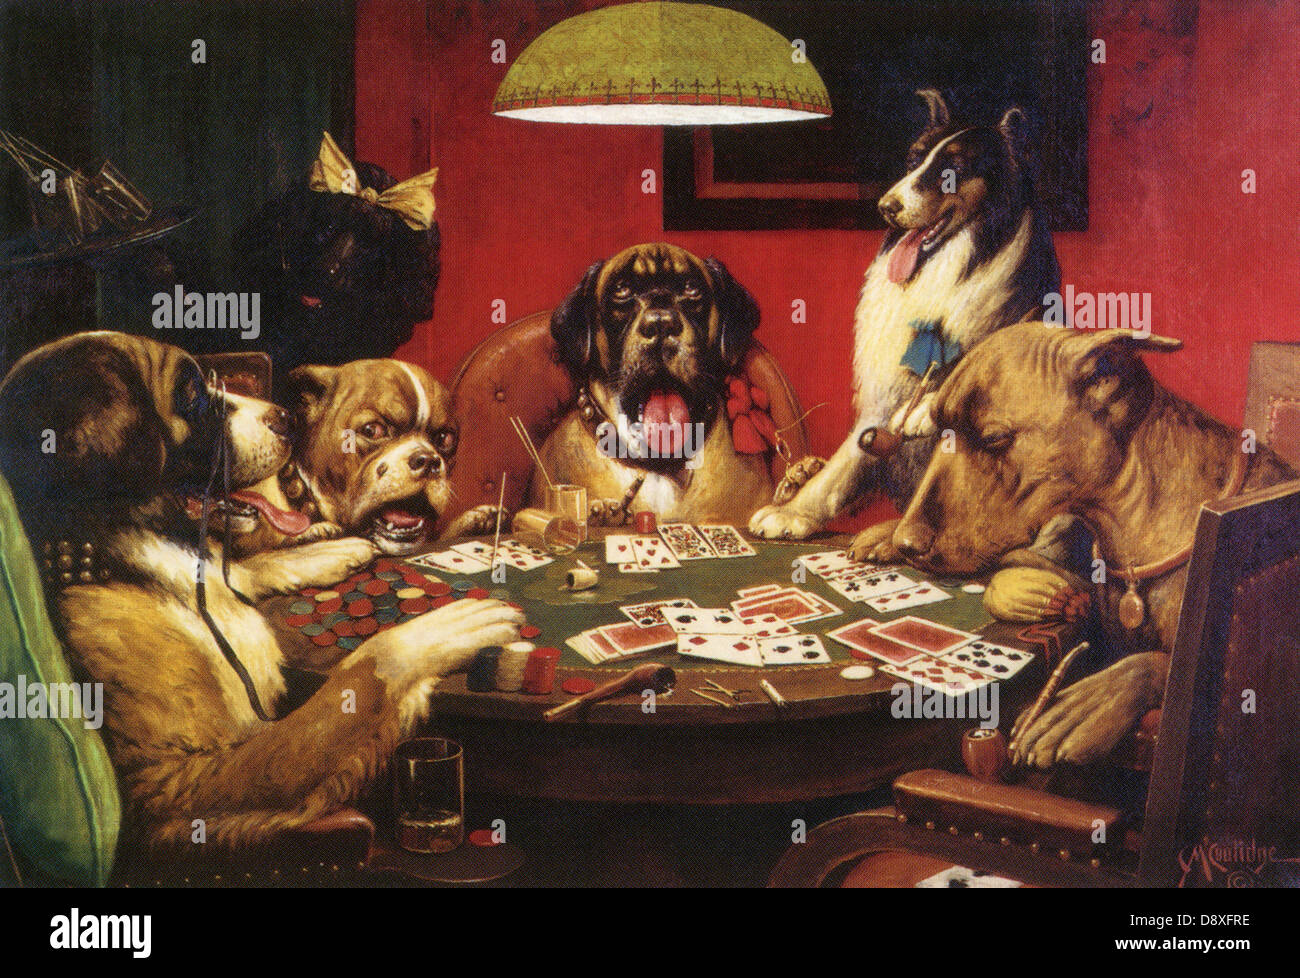 Perros jugando al póquer de Cassius Marcellus Coolidge Fotografía de stock  - Alamy